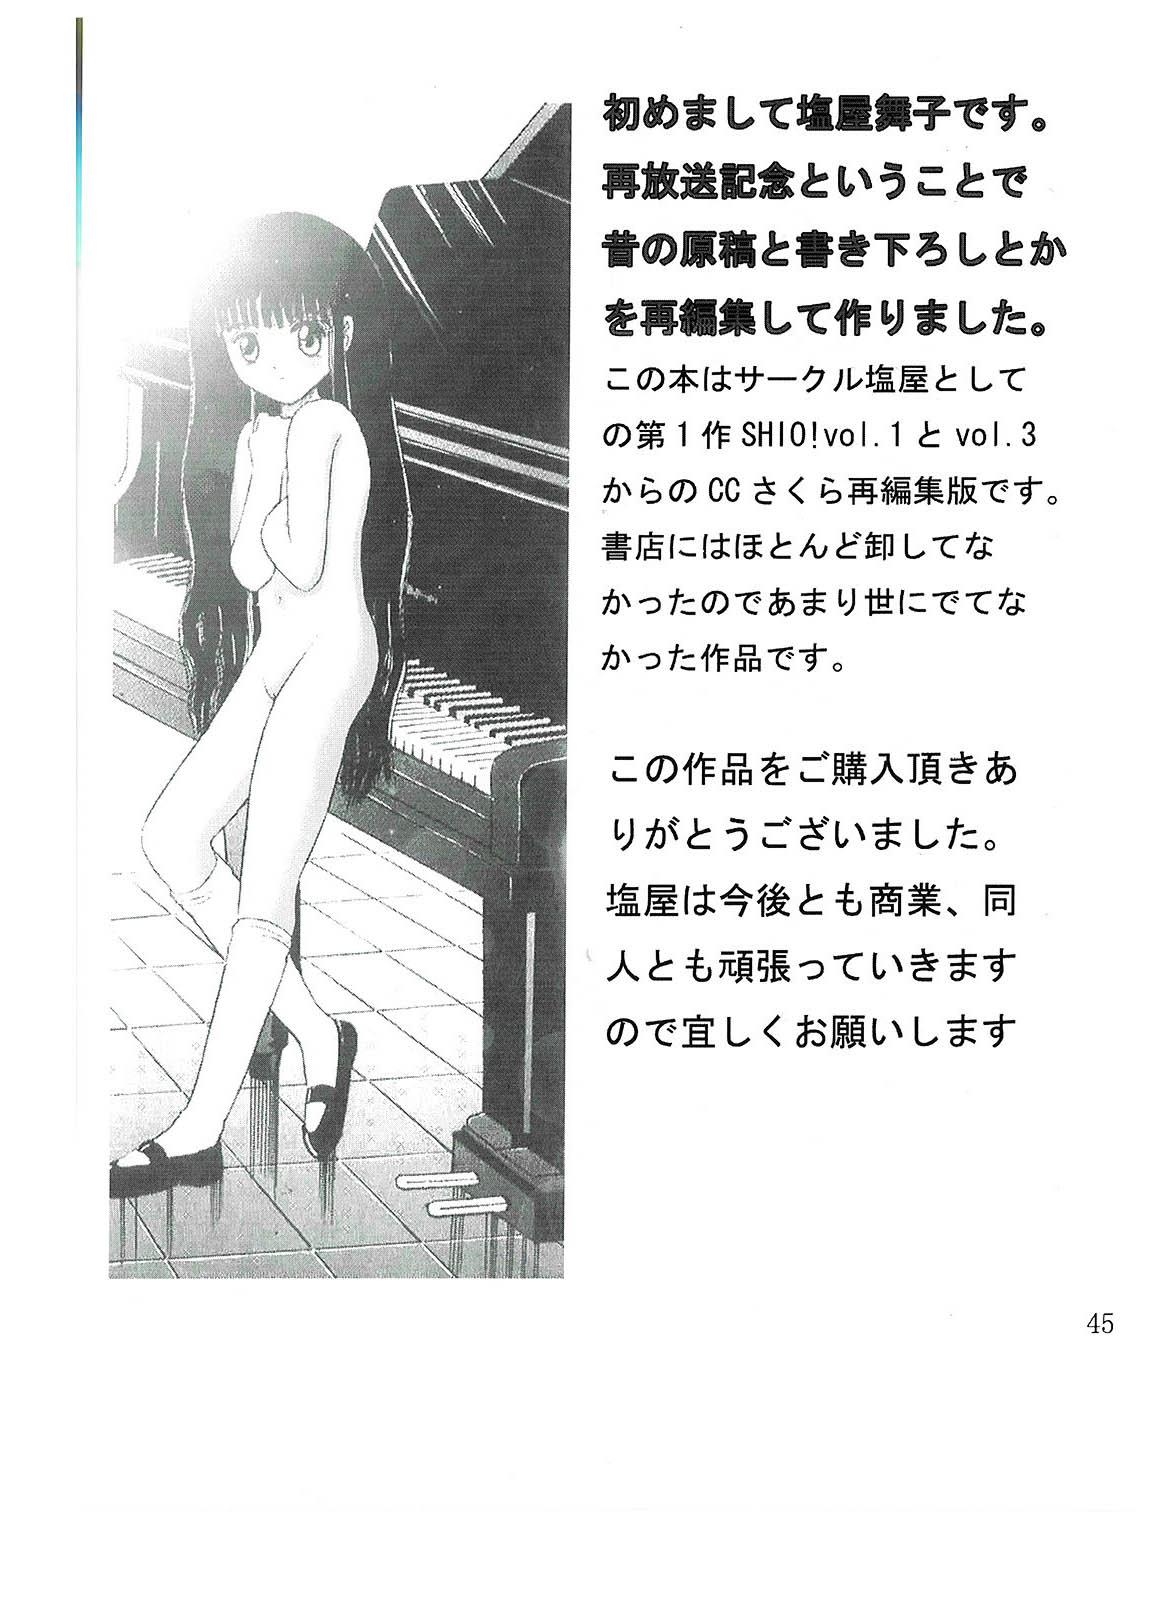 Foot Job SHIO!re vol.1 - Cardcaptor sakura Orgame - Page 45